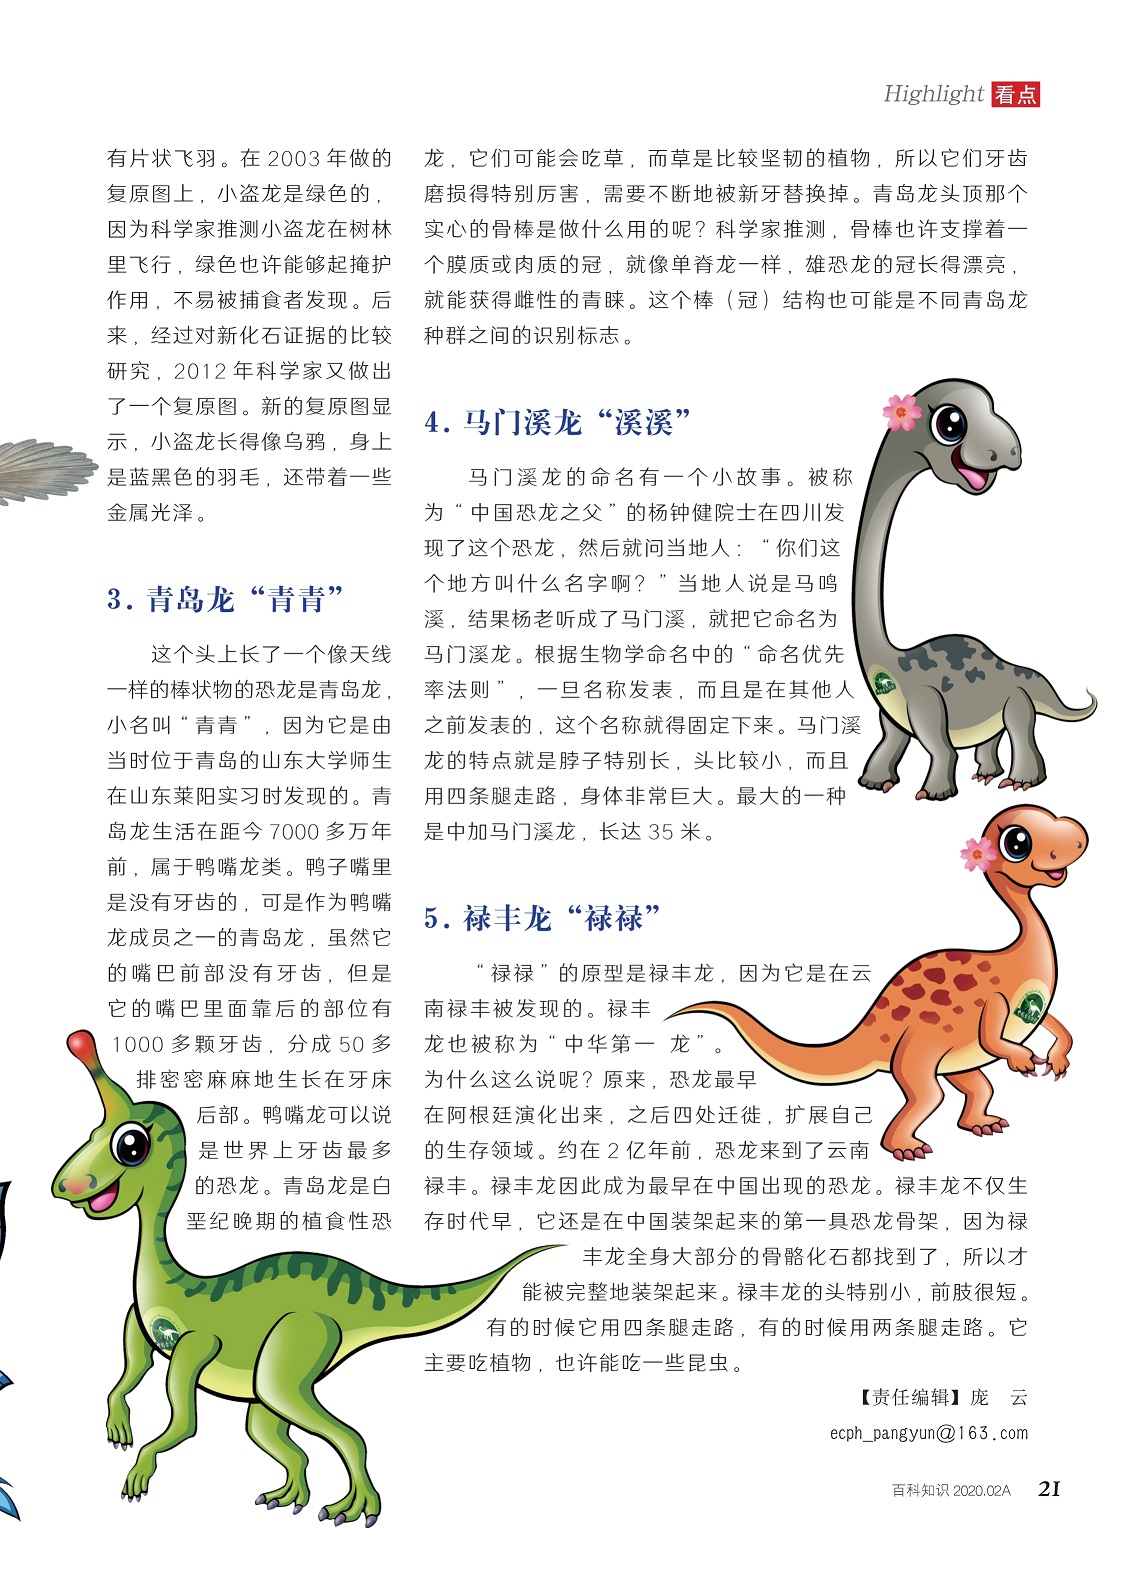 中国恐龙家族中的五大明星